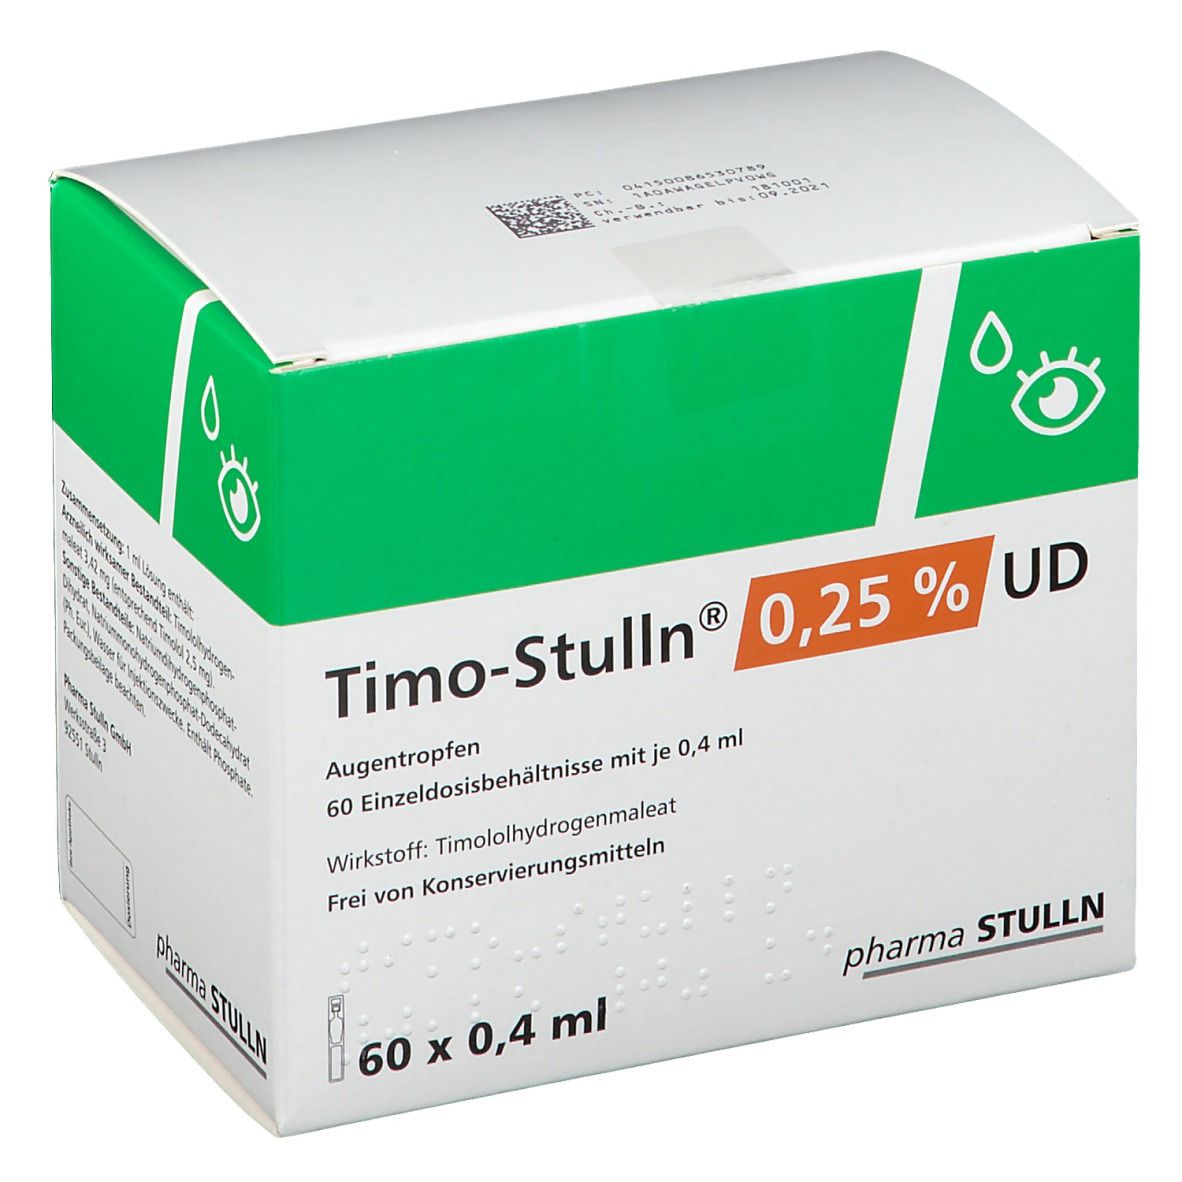 Timo-Stulln® 0,25 % UD